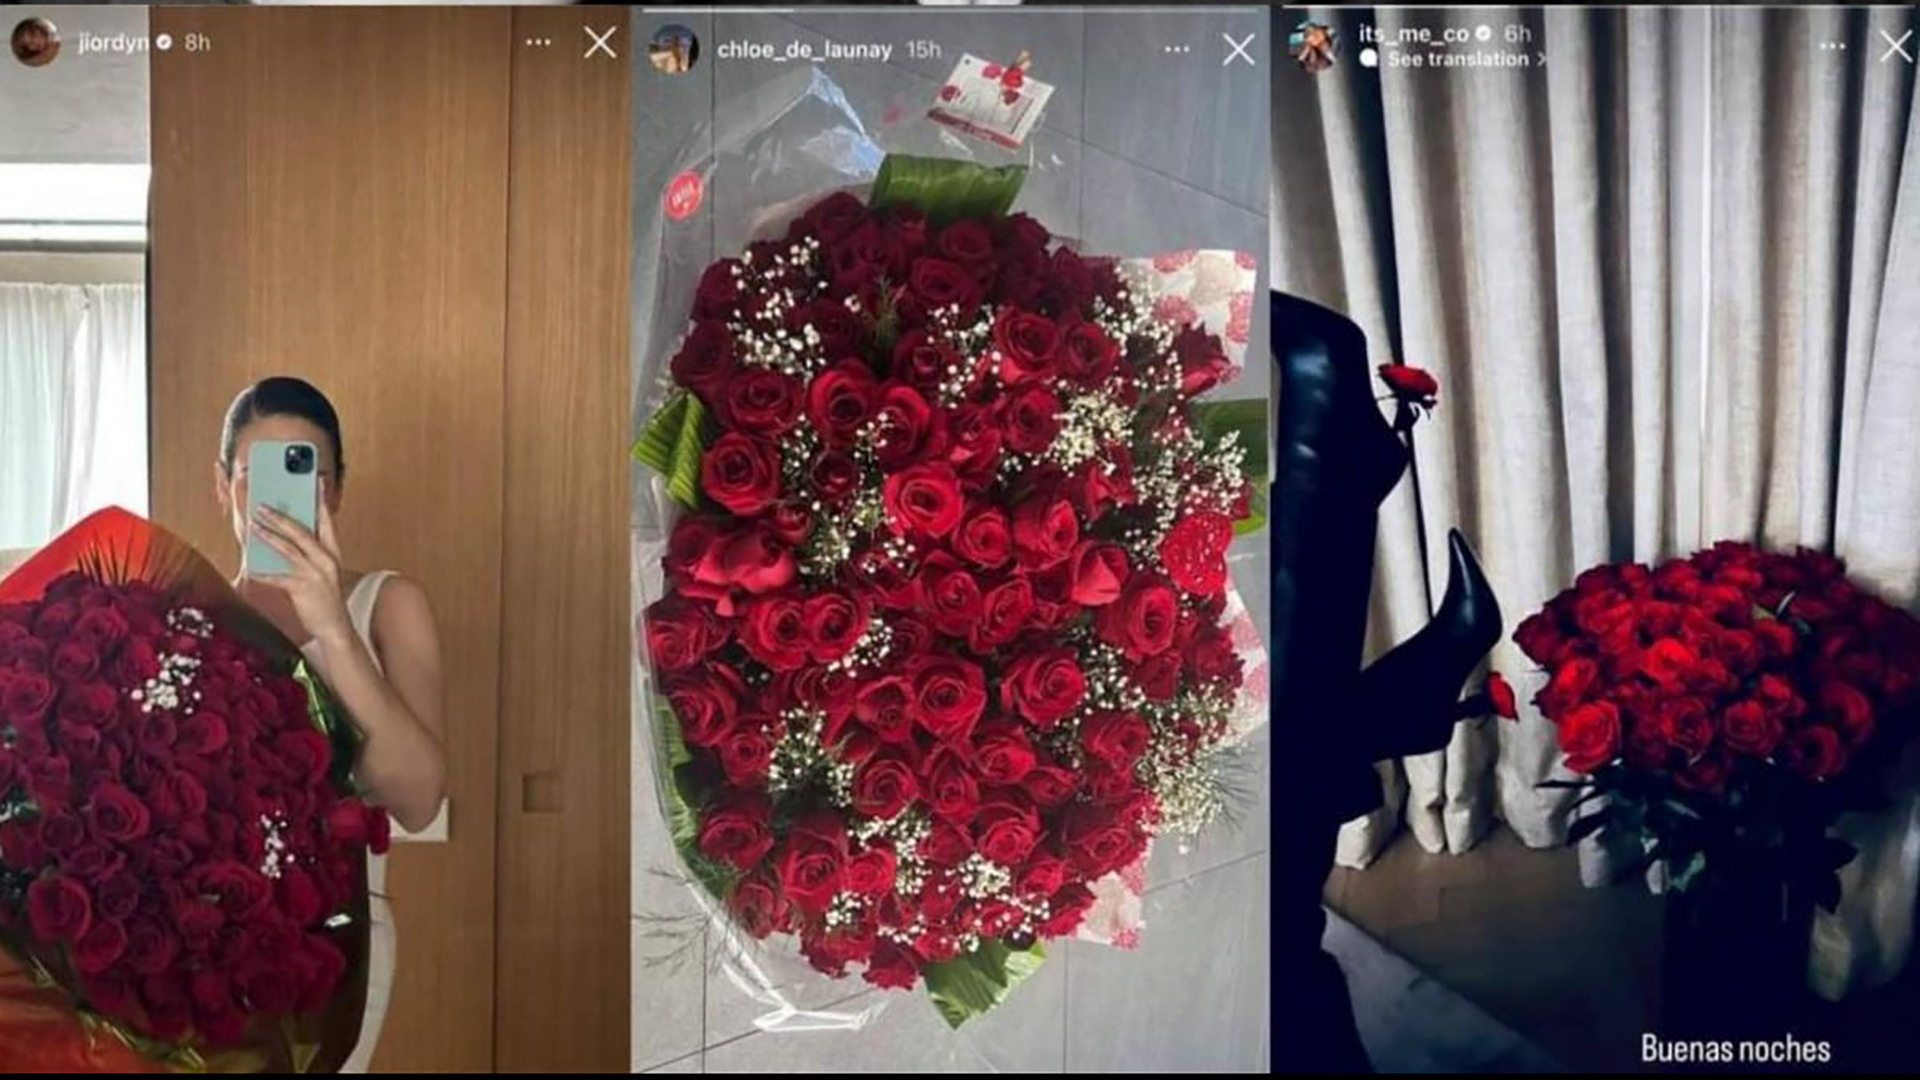 Lãng mạn, đa tình như Benzema: Tặng hoa Valentine cho cả vợ và 2 bạn gái - Ảnh 1.